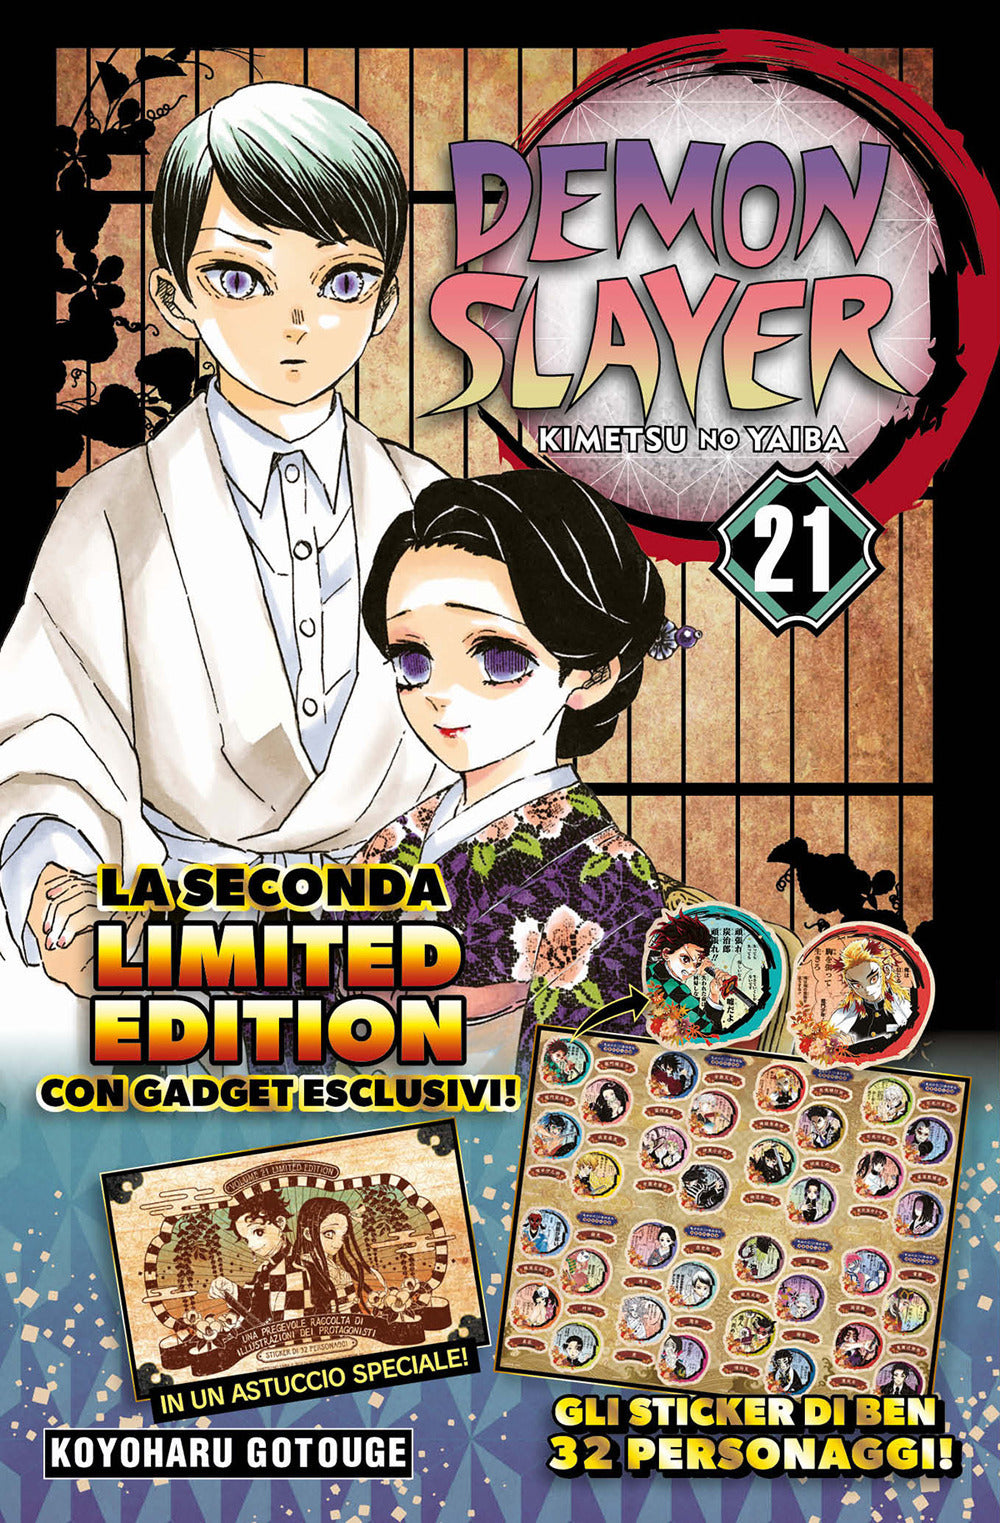 Demon slayer. Kimetsu no yaiba. Limited edition. Con Adesivi. Vol. 21